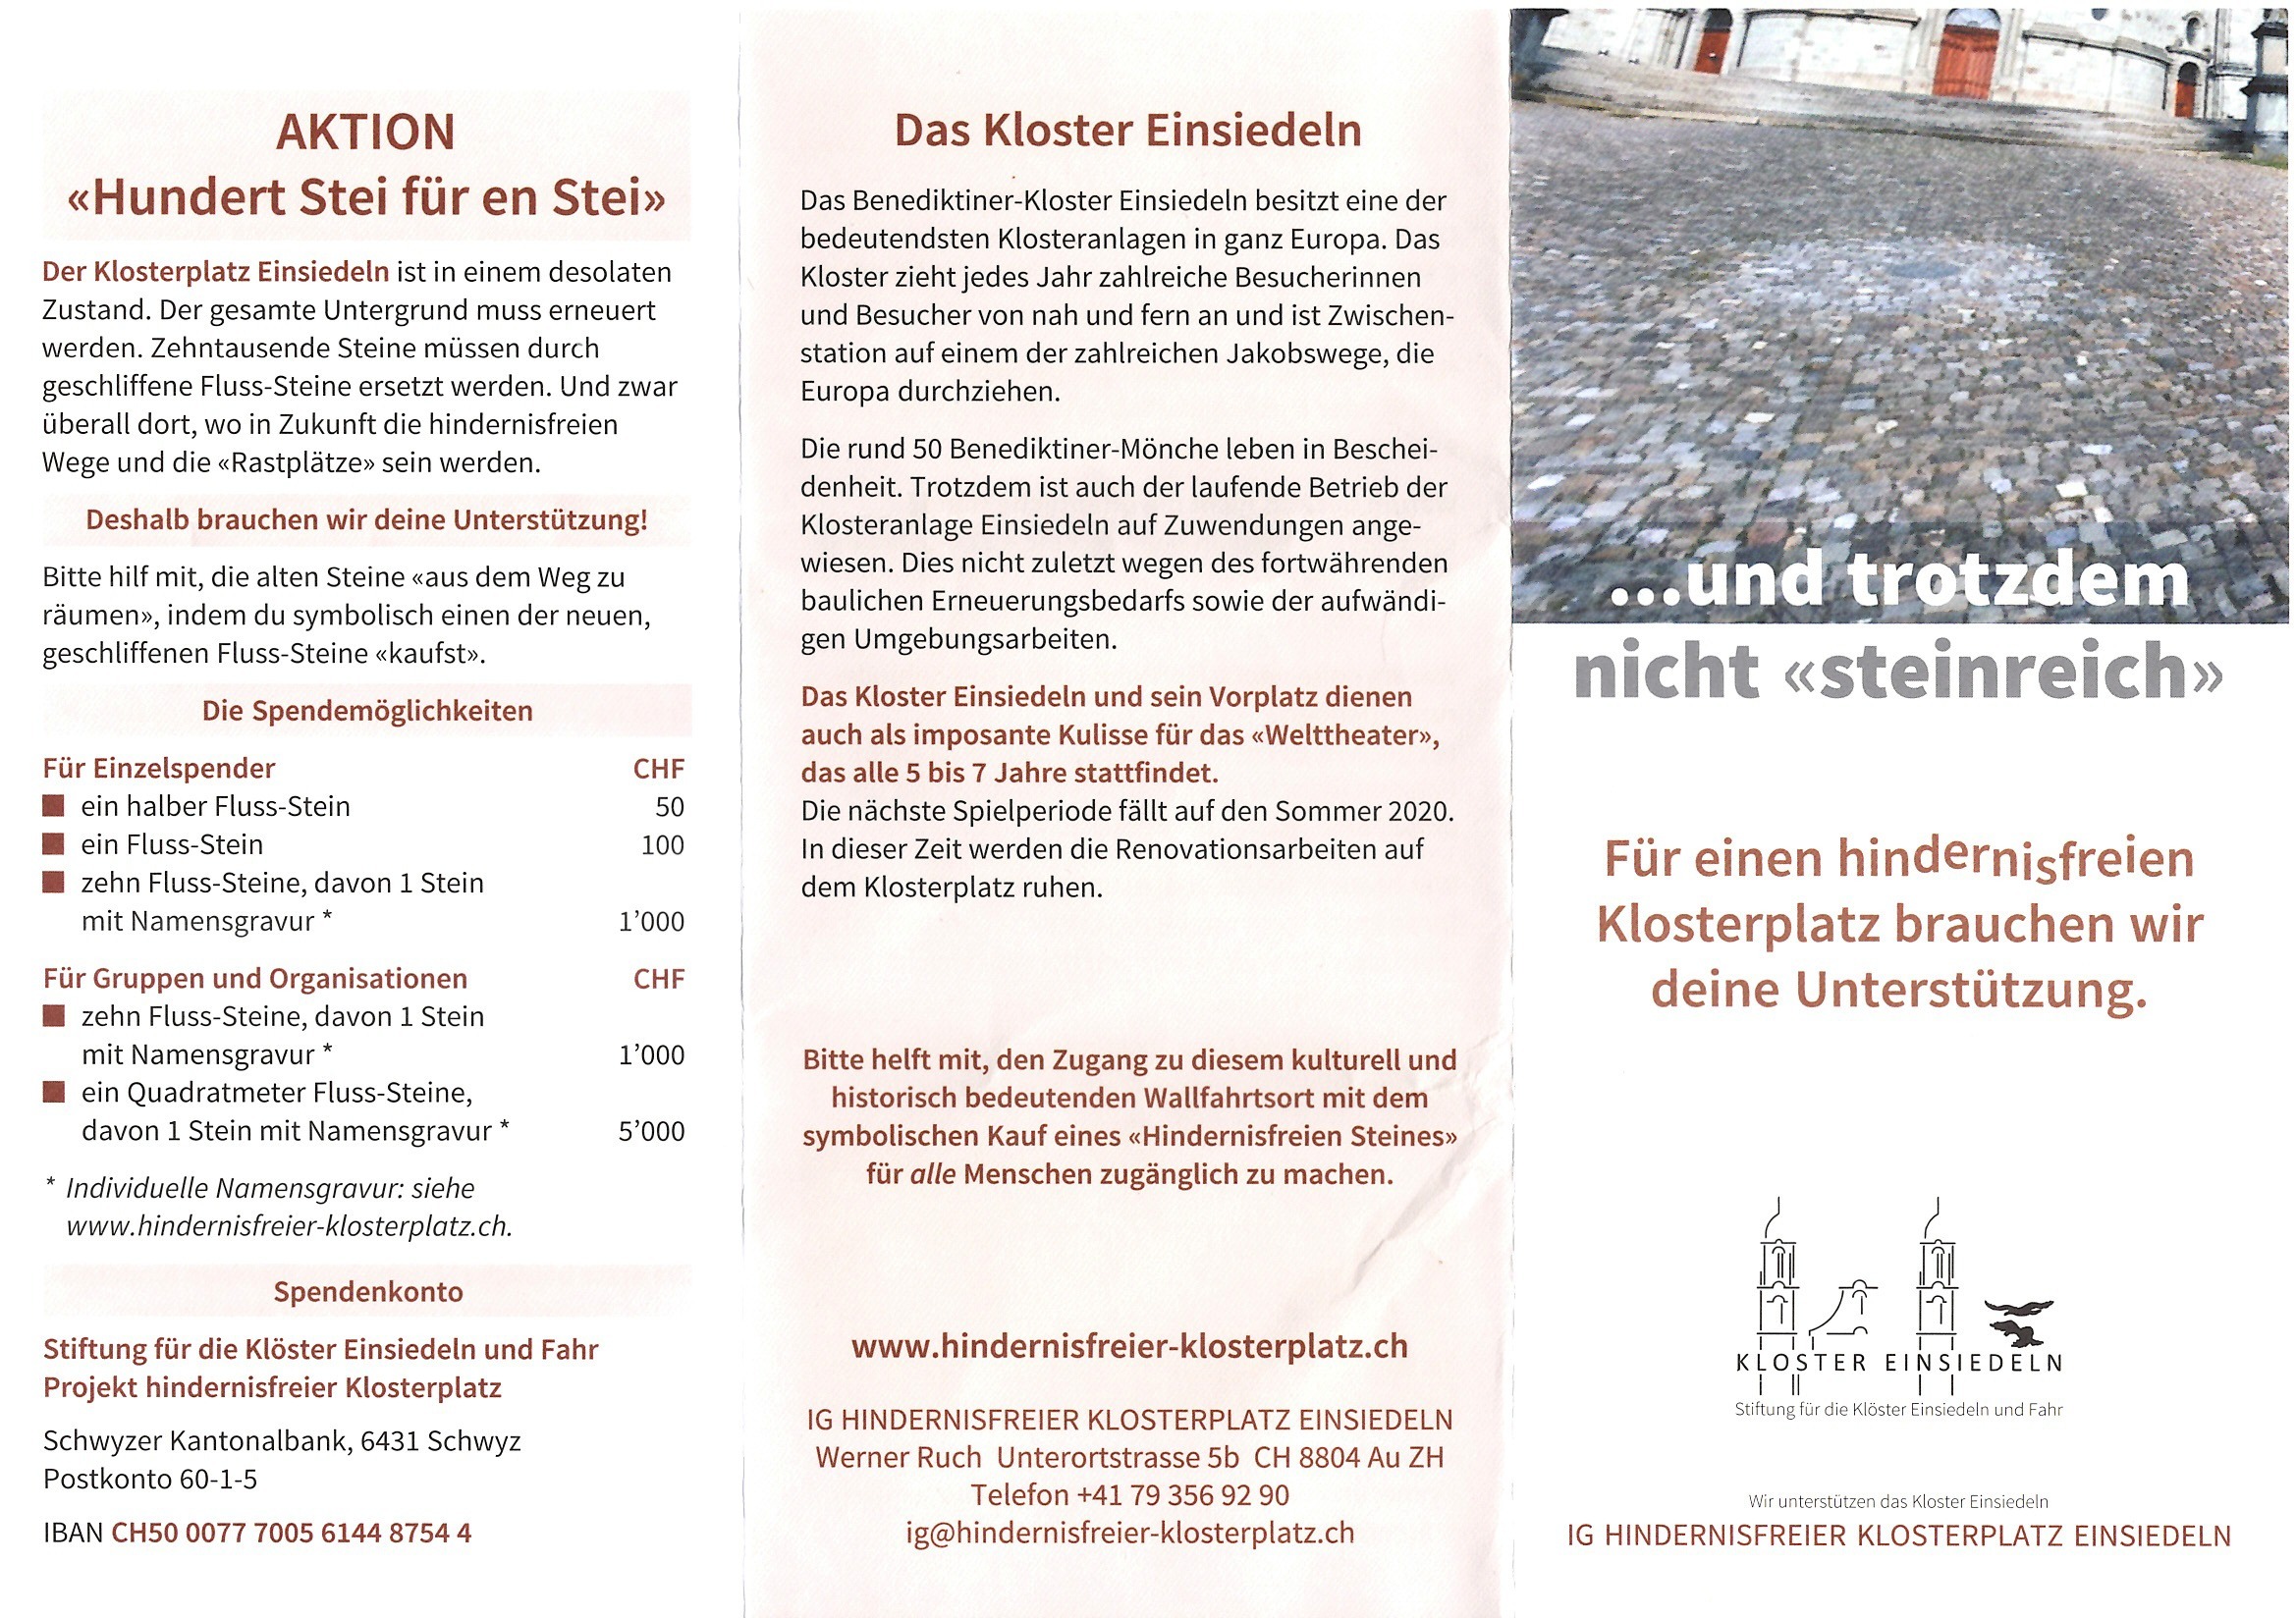 Hindernisfreier-Klosterplatz 2019 004